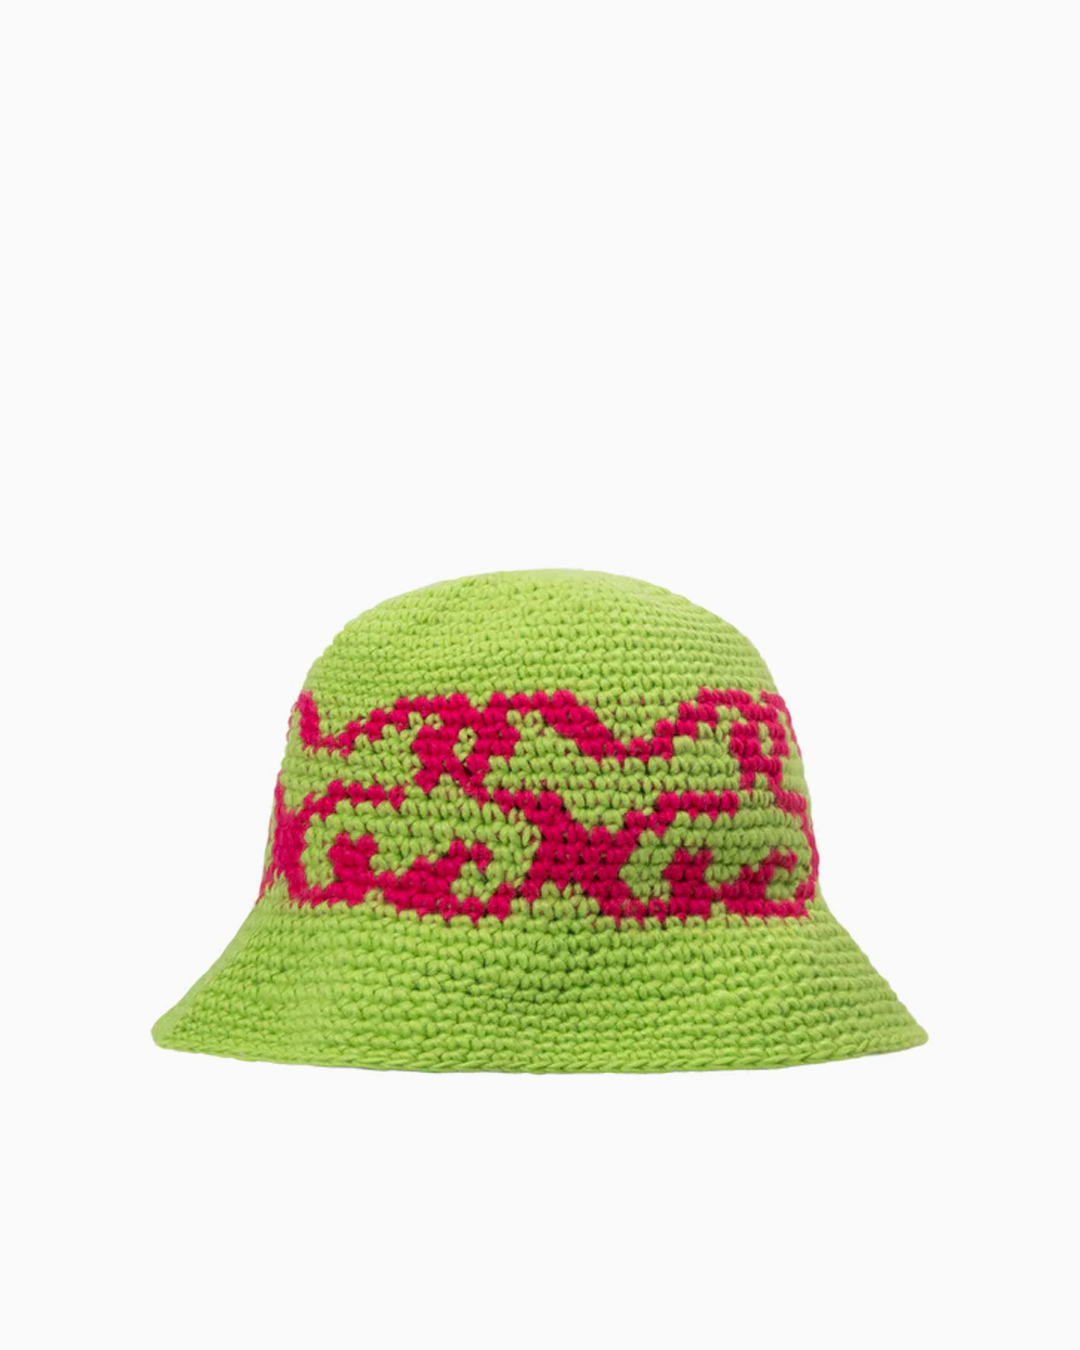 SS Knit Bucket Hat $59 Stussy Headwear Hats Green